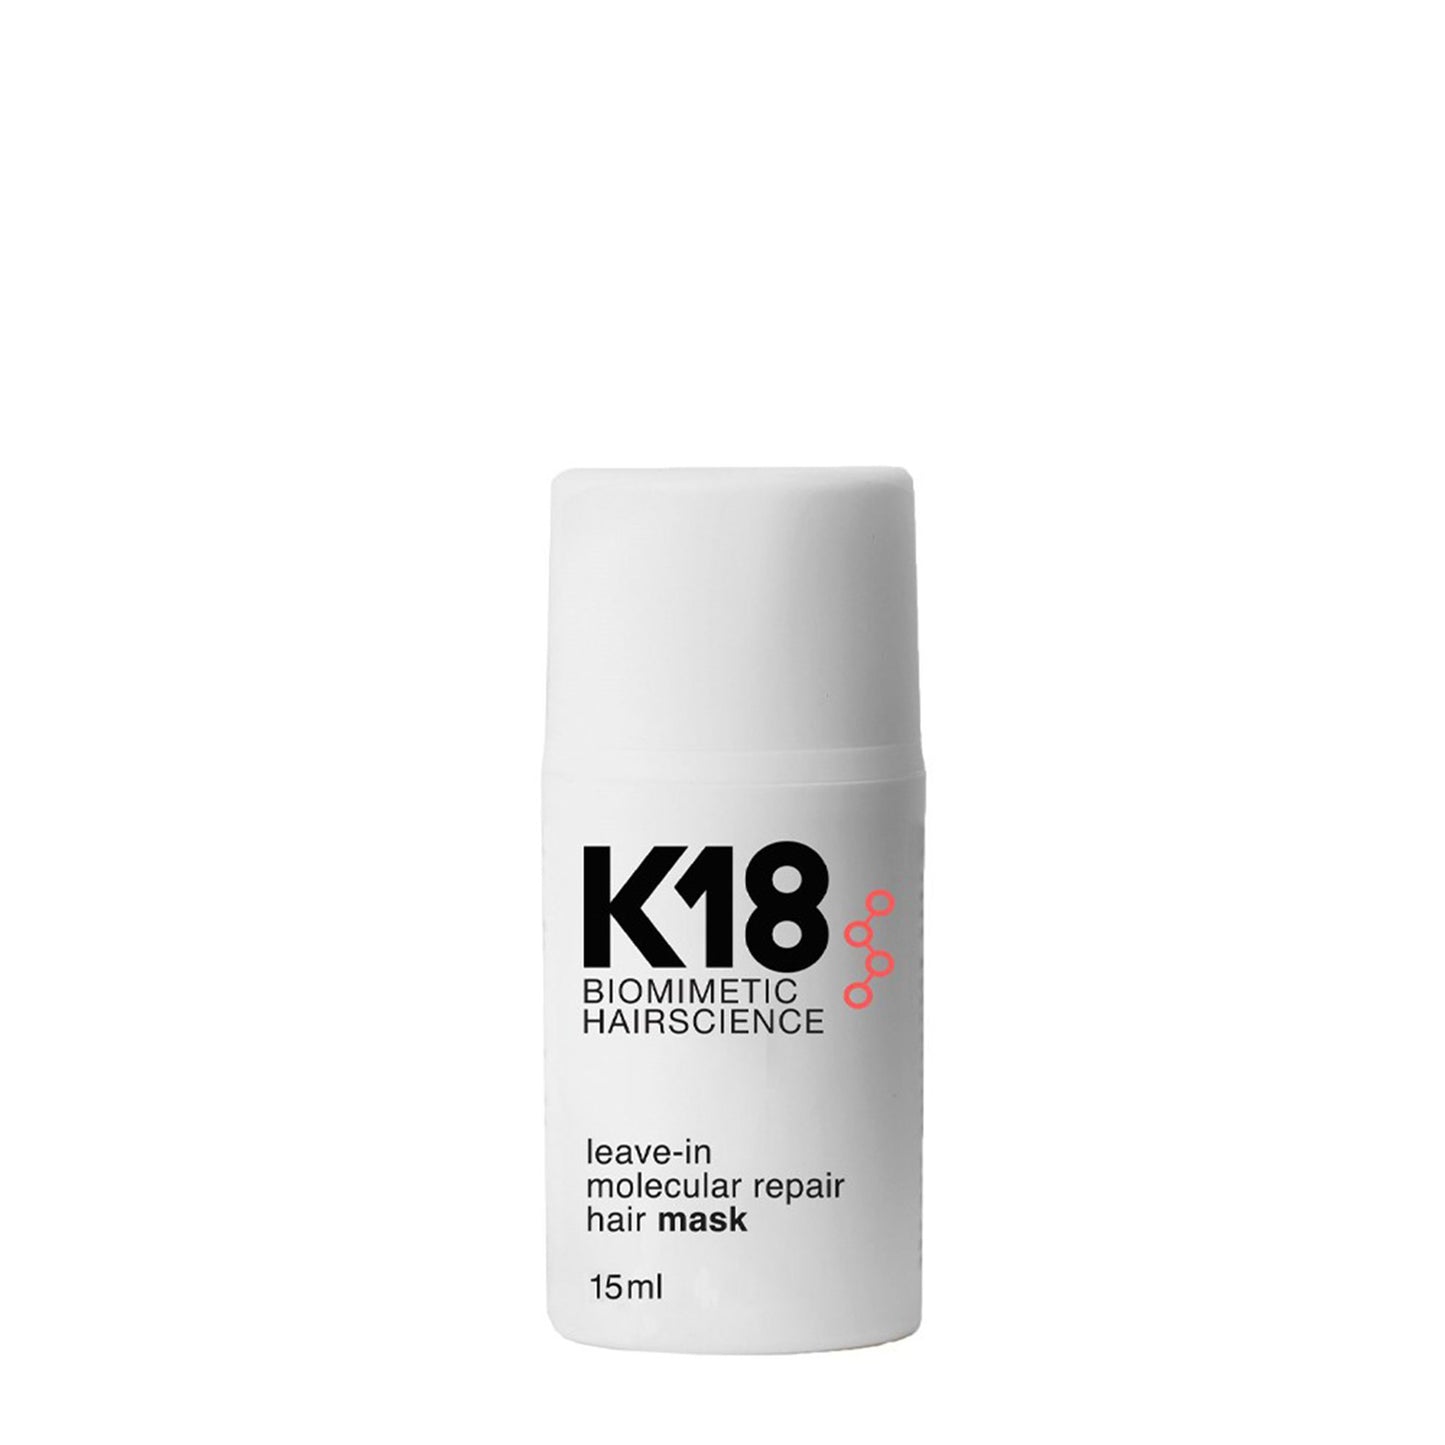 K18 (Leave-in Molecular Repair Hair Mask )(4分鐘家用修護髮膜) 15ml, 50ml (動搜買任何三件八折)